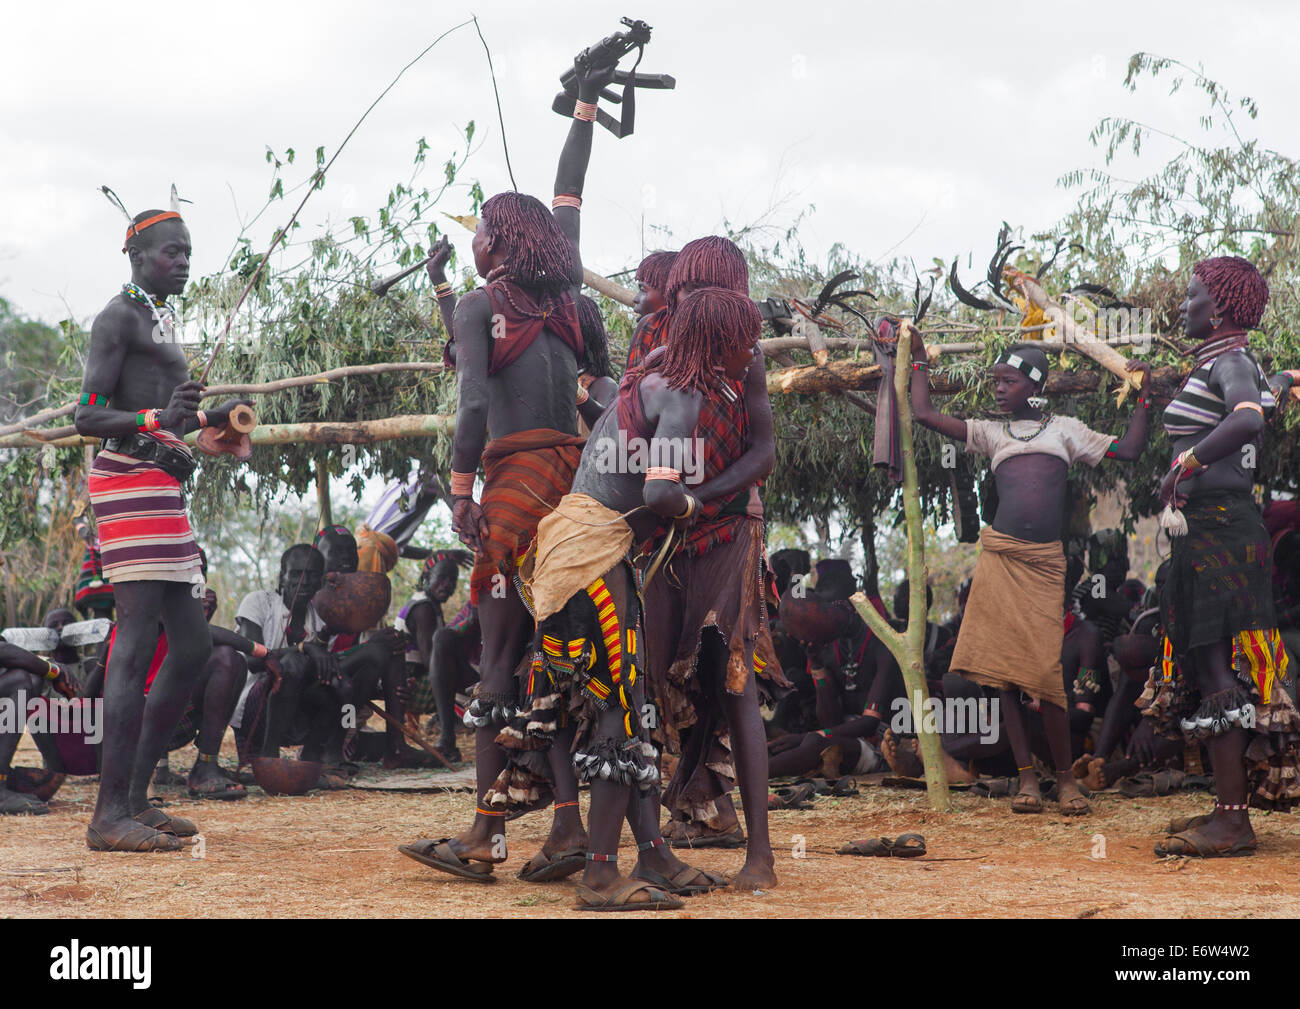 Les femmes de la tribu Bashada fouetté lors d'une cérémonie, Dimeka Bull Jumping, vallée de l'Omo, Ethiopie Banque D'Images